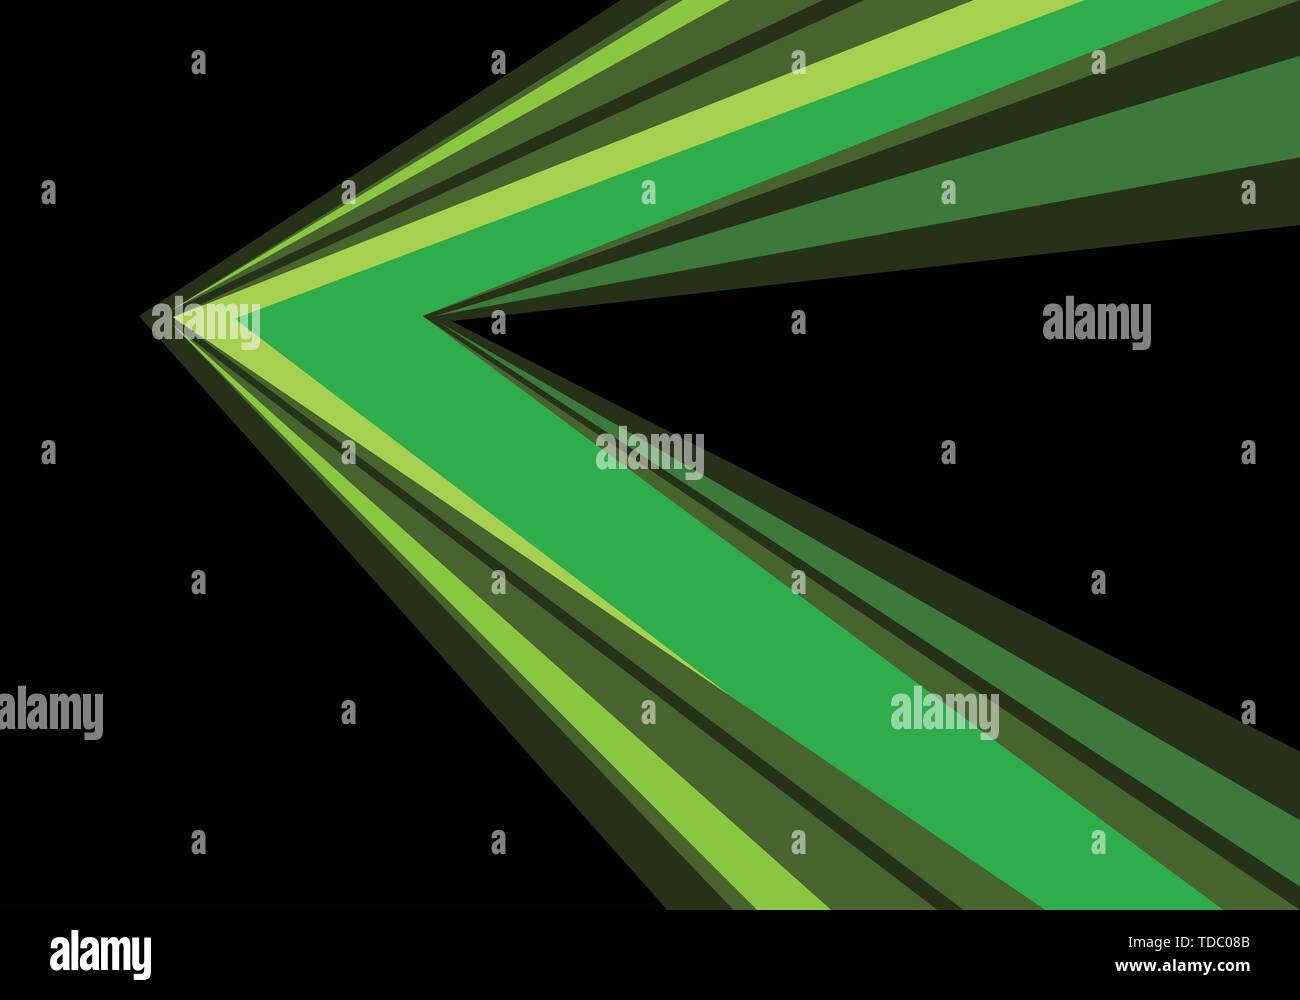 Geschwindigkeit Richtung abstrakte grüner Pfeil auf schwarzem Design moderne futuristischen Hintergrund Vector Illustration. Stock Vektor